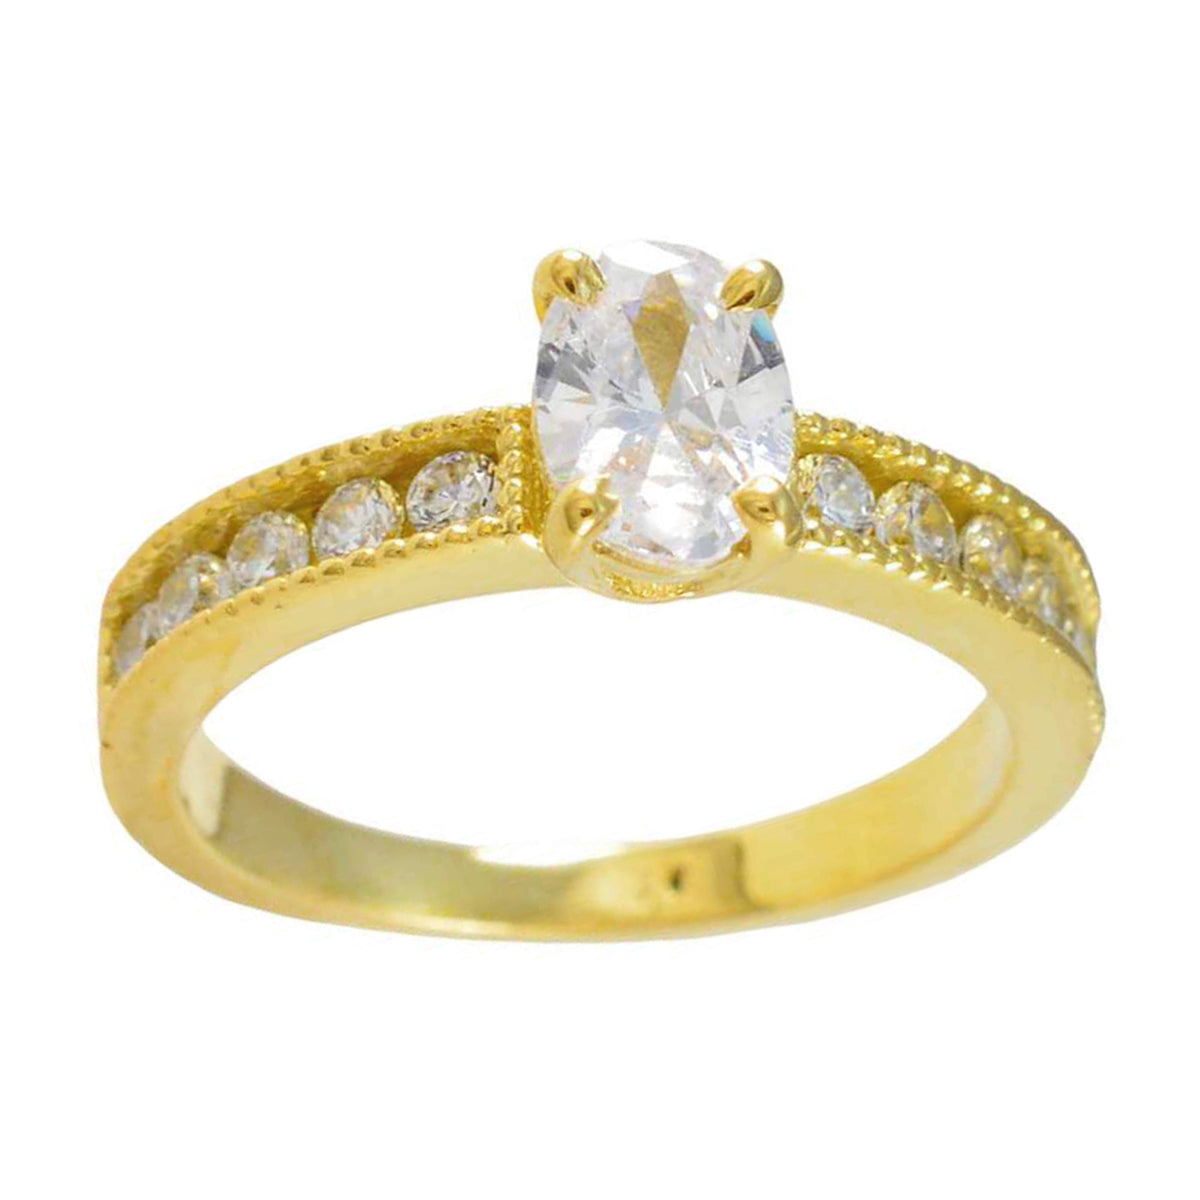 Riyo Quantitativer Silberring mit gelber Vergoldung, ovaler Ring mit Krappenfassung und weißem CZ-Stein